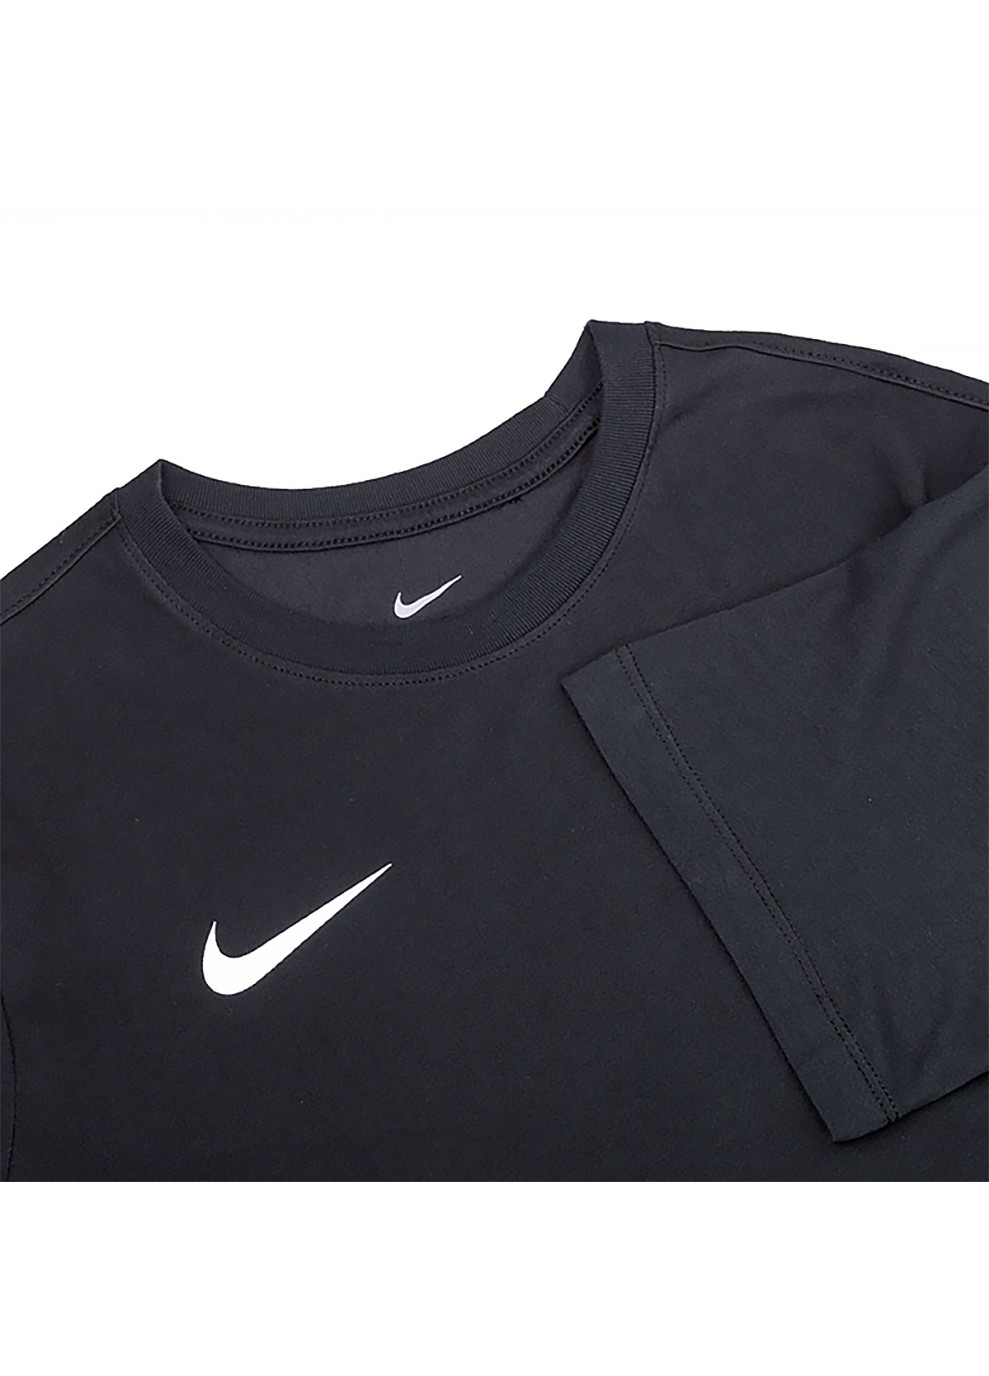 Черная мужская футболка m nk dry park20 ss tee черный s (cw6952-010 s) Nike